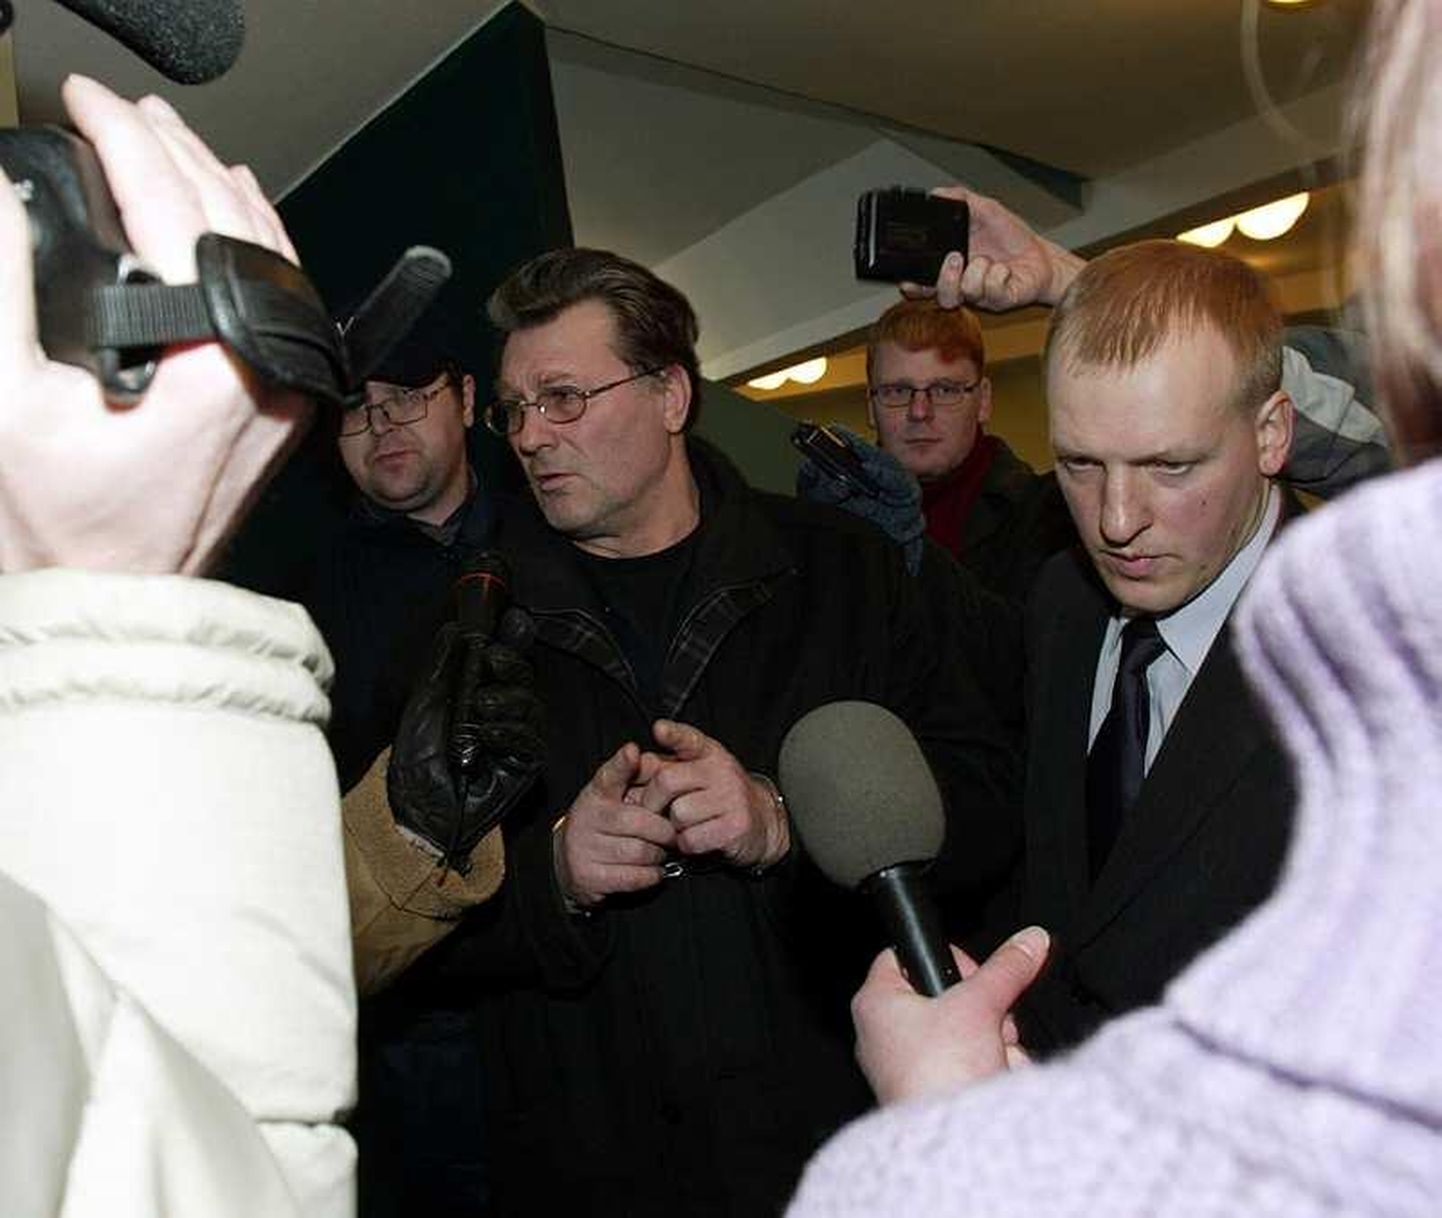 Raudus kätega abilinnapea Vladimir Panov 2003. aastal ajakirjanike piiramisrõngas.